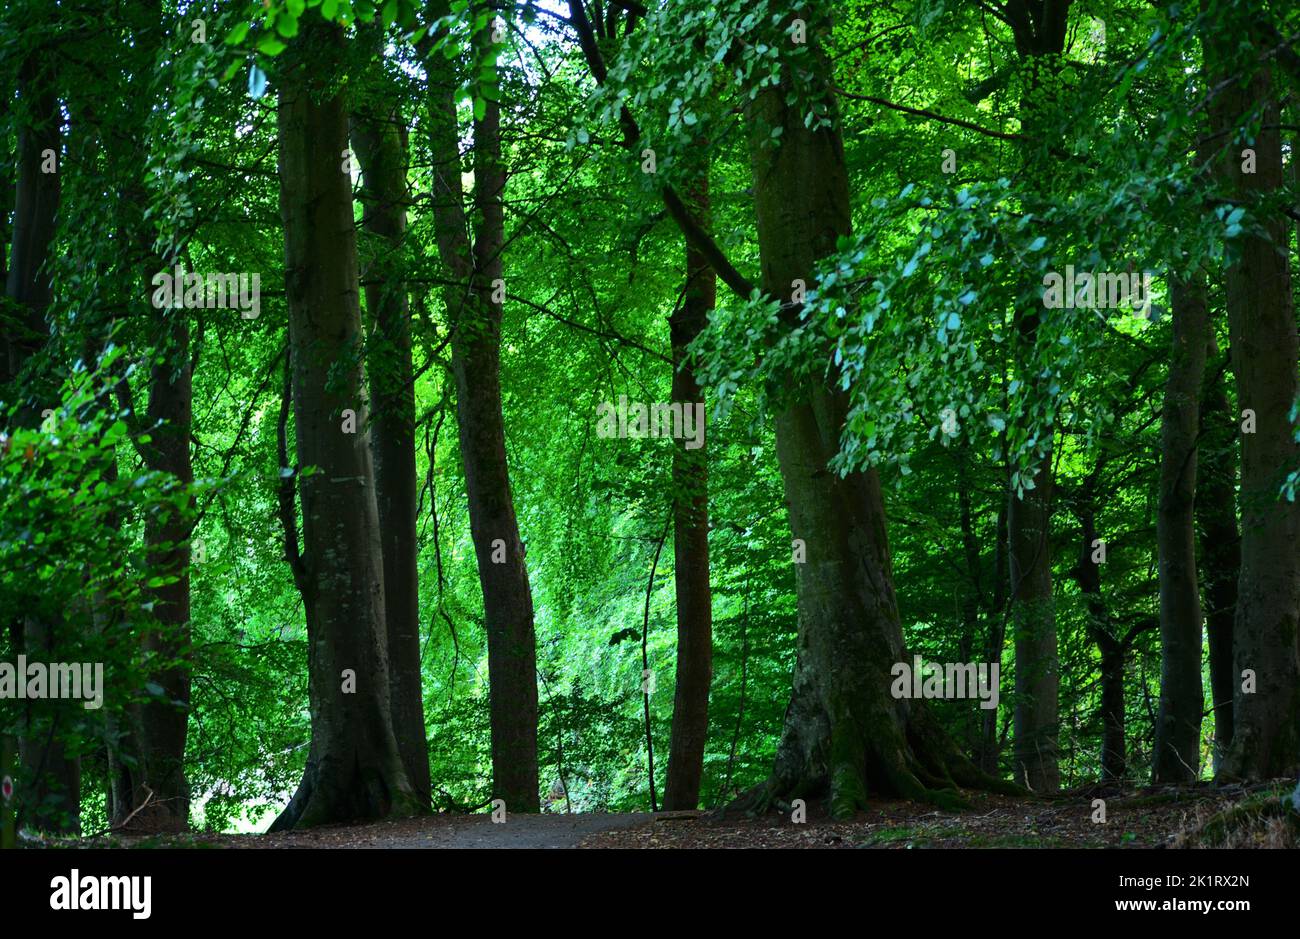 Den Wood, entre cultos y parque Hazlehead en Aberdeen, uno de los pocos parches remanentes de bosques caducifolios semi-naturales en el noreste de Escocia Foto de stock